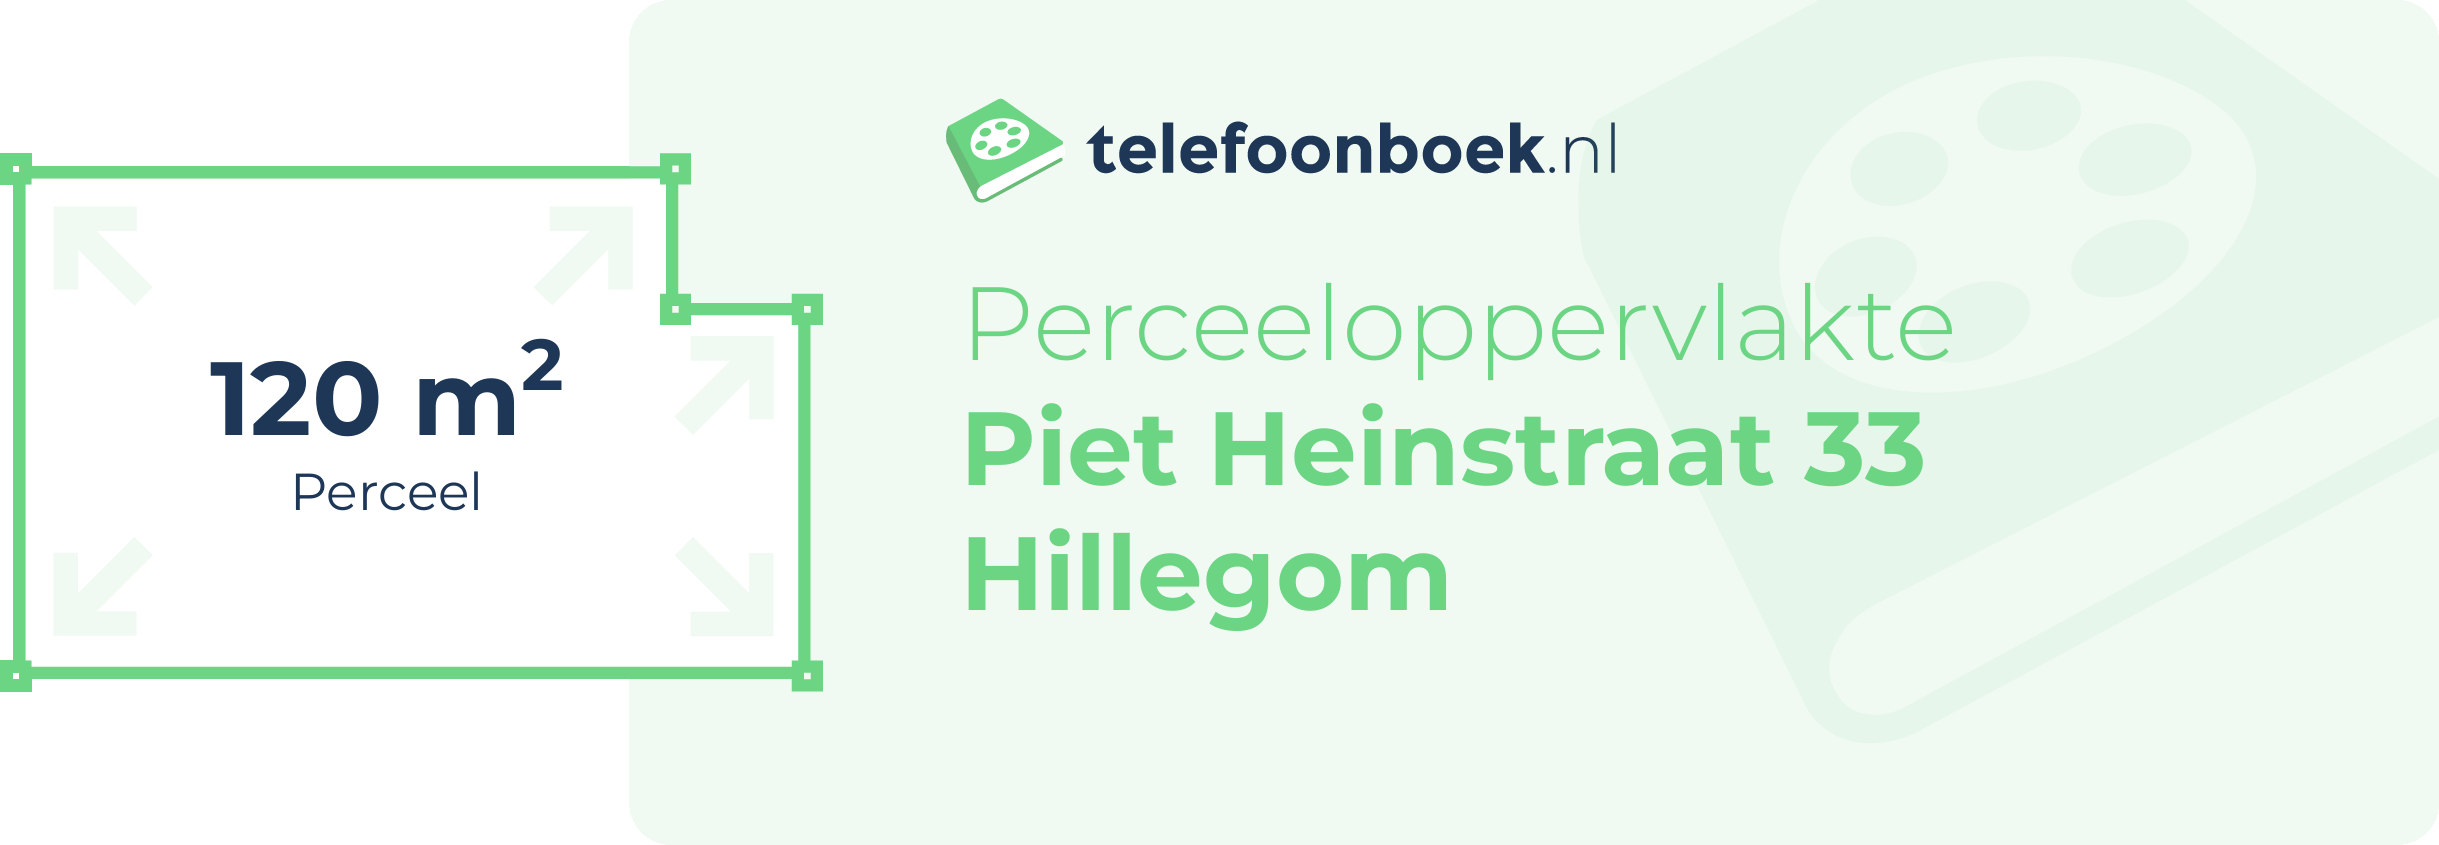 Perceeloppervlakte Piet Heinstraat 33 Hillegom